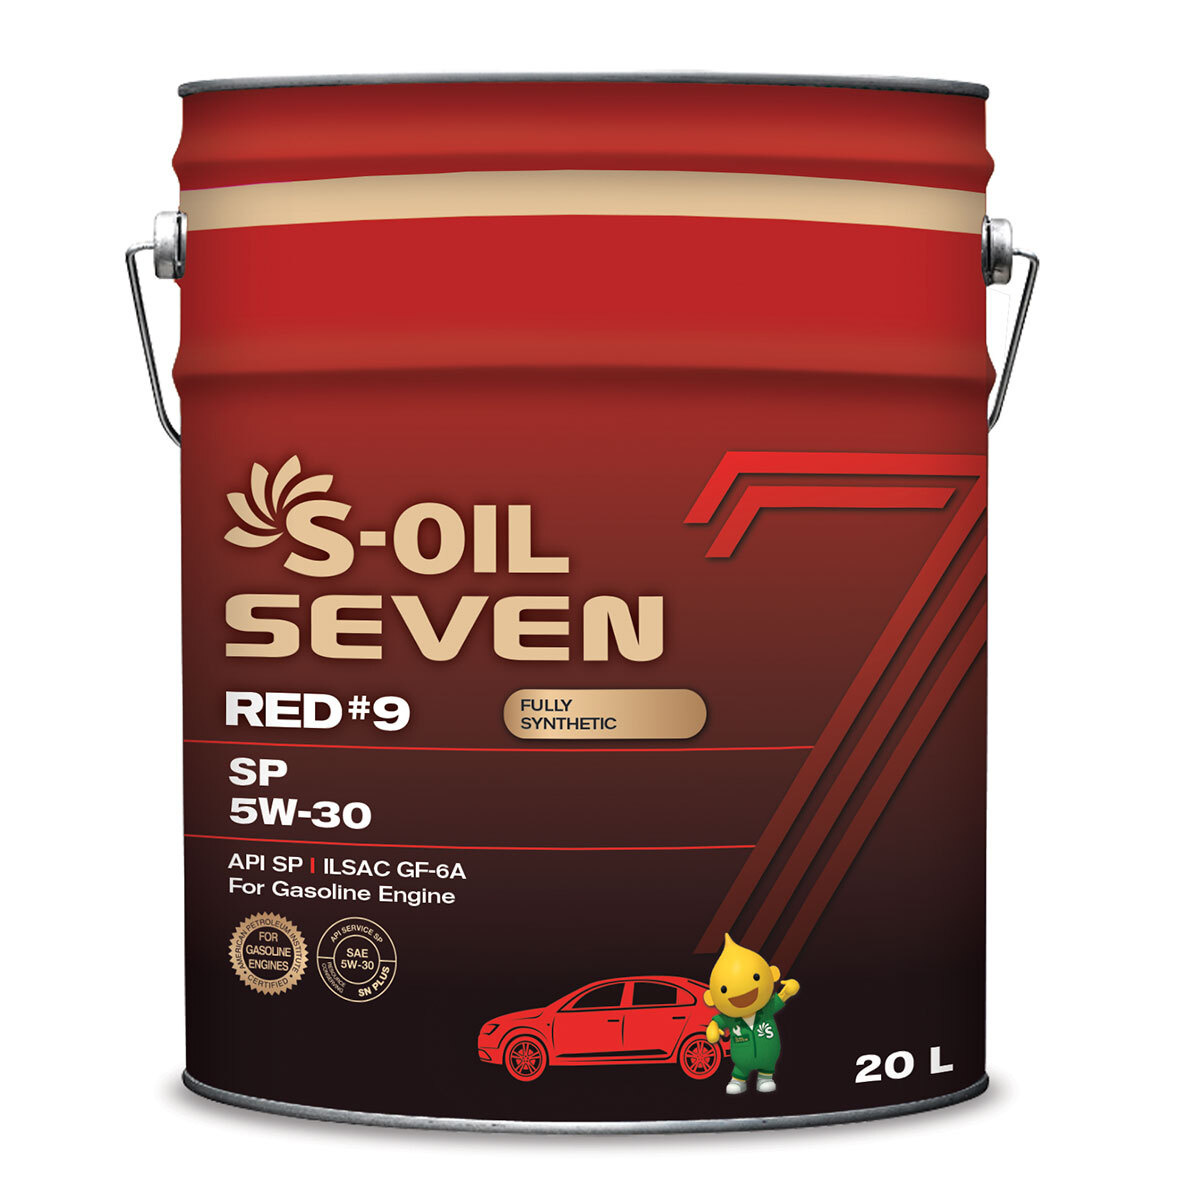  масло S-OIL SEVEN RED#9 5W-30 Синтетическое 20 л -  в .